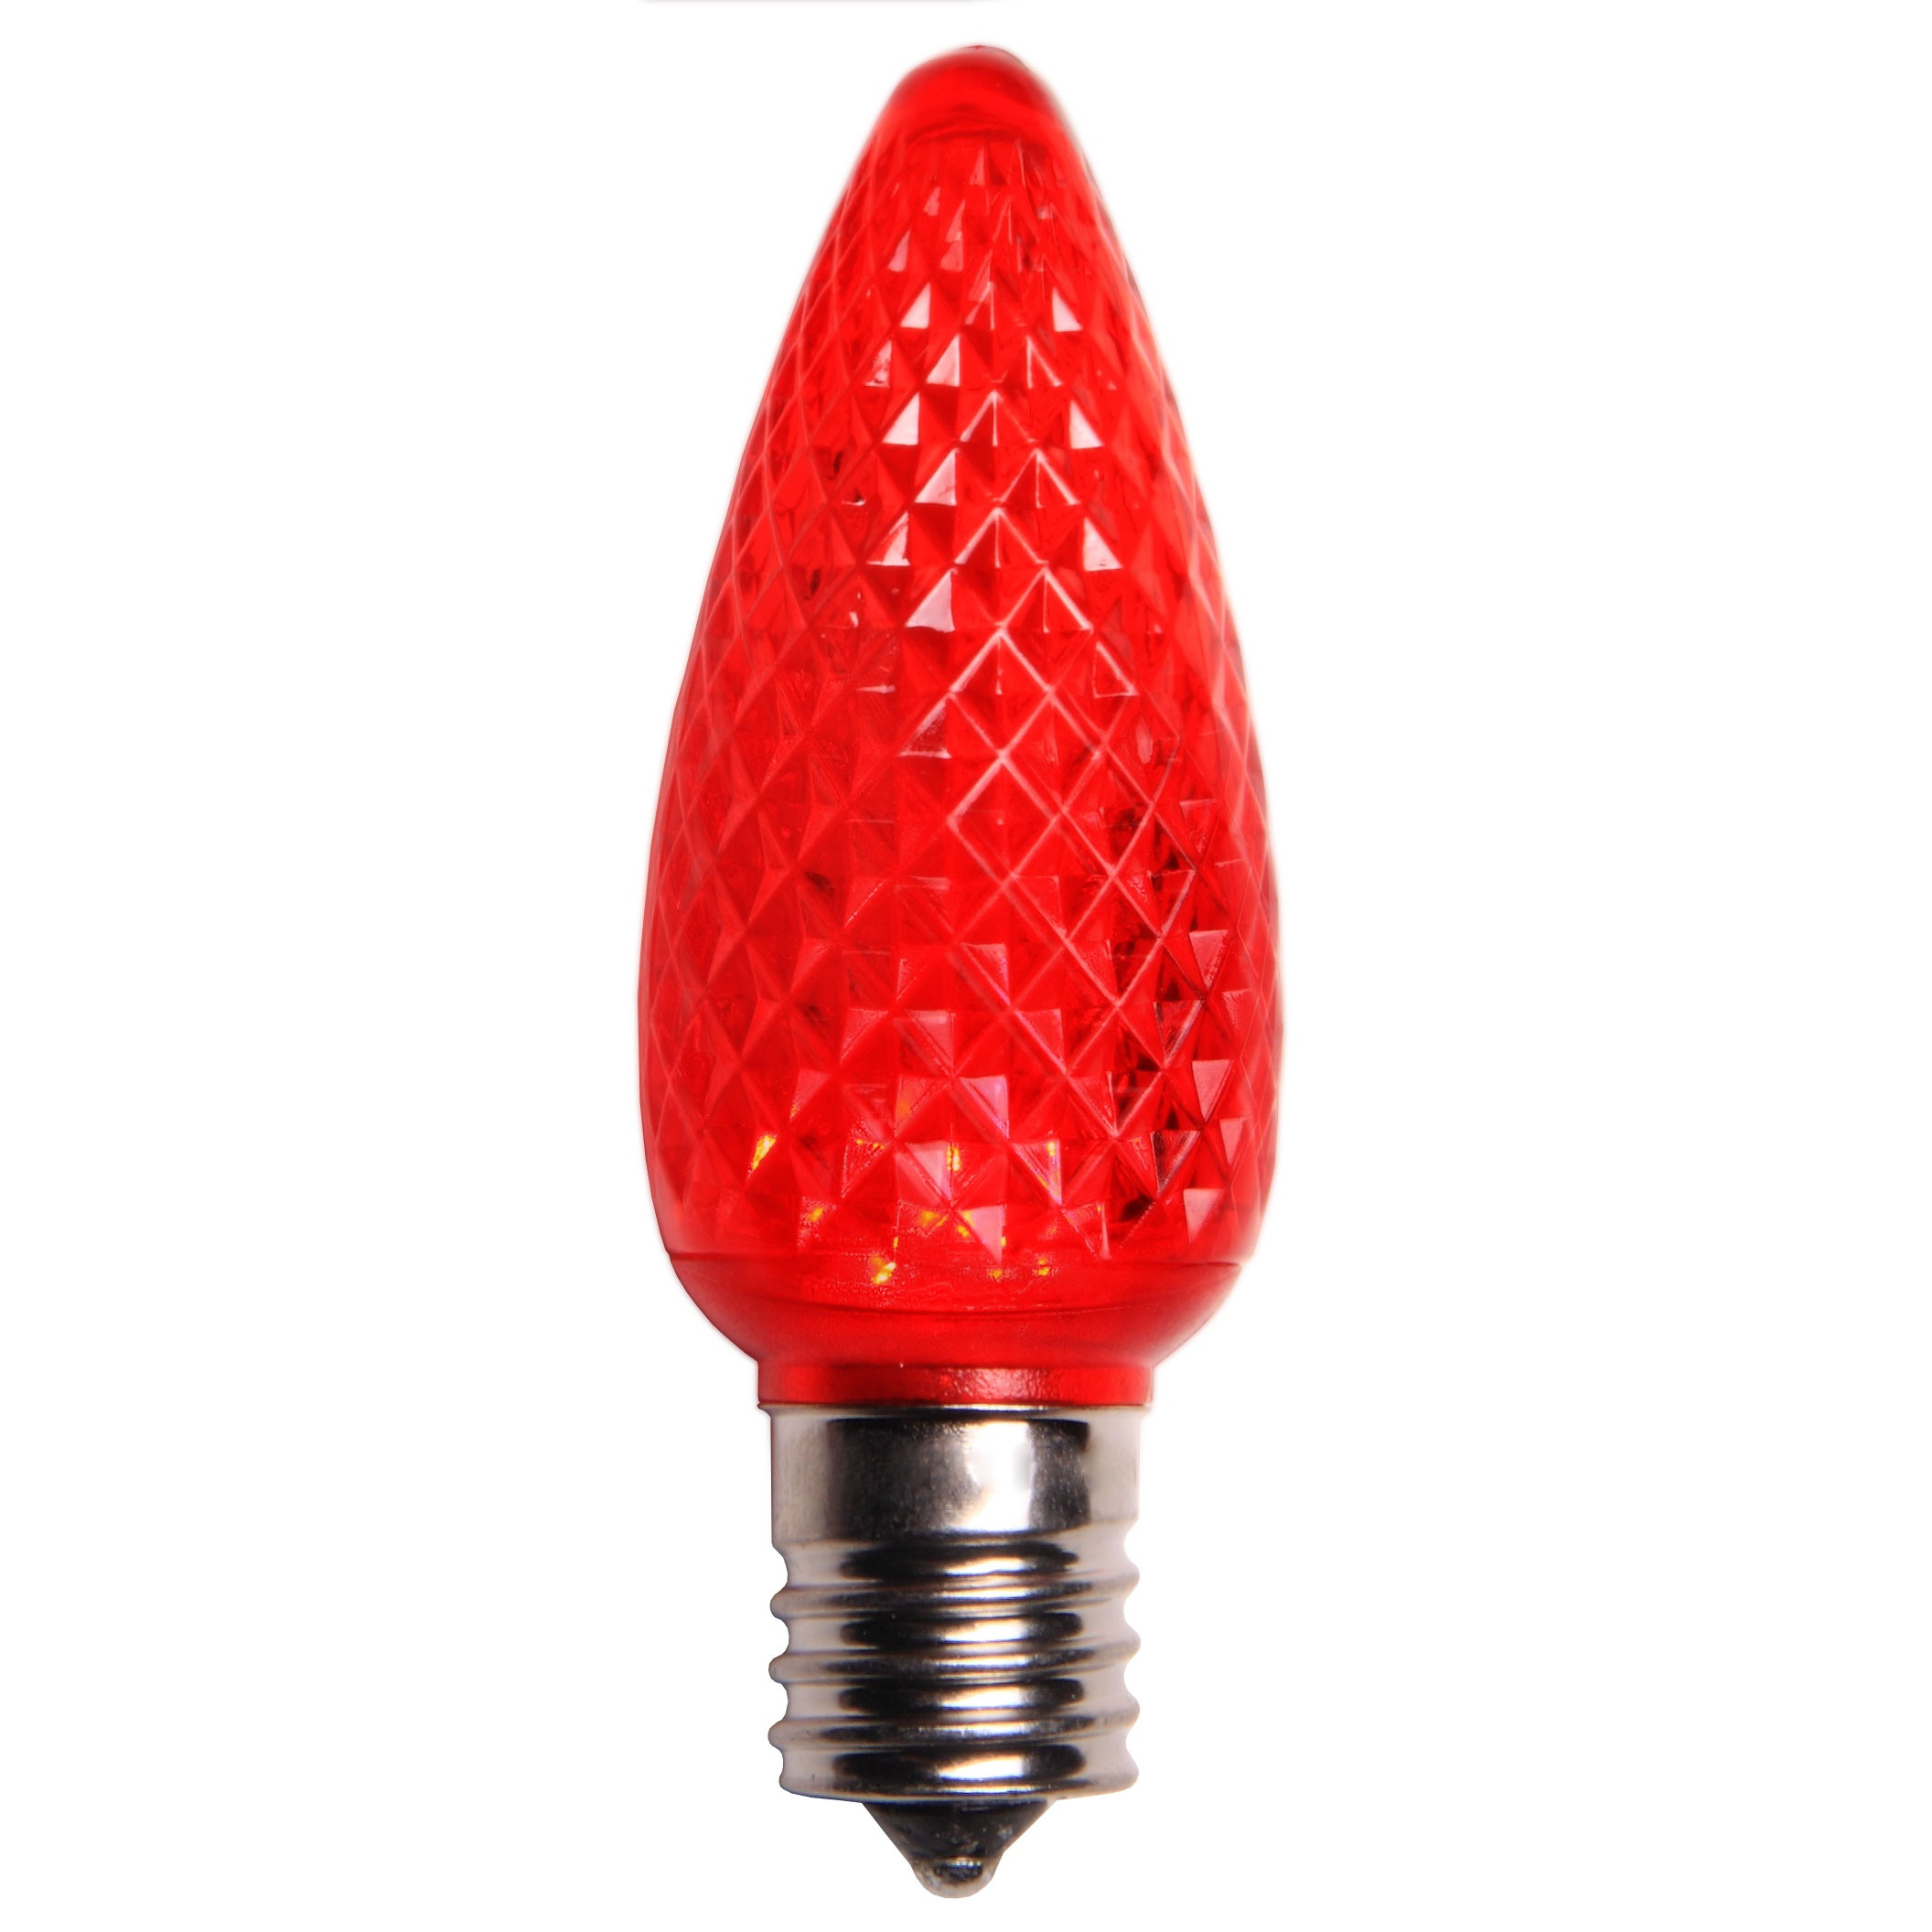 Christmas Light Lamp
 C9 Red LED Christmas Light Bulbs